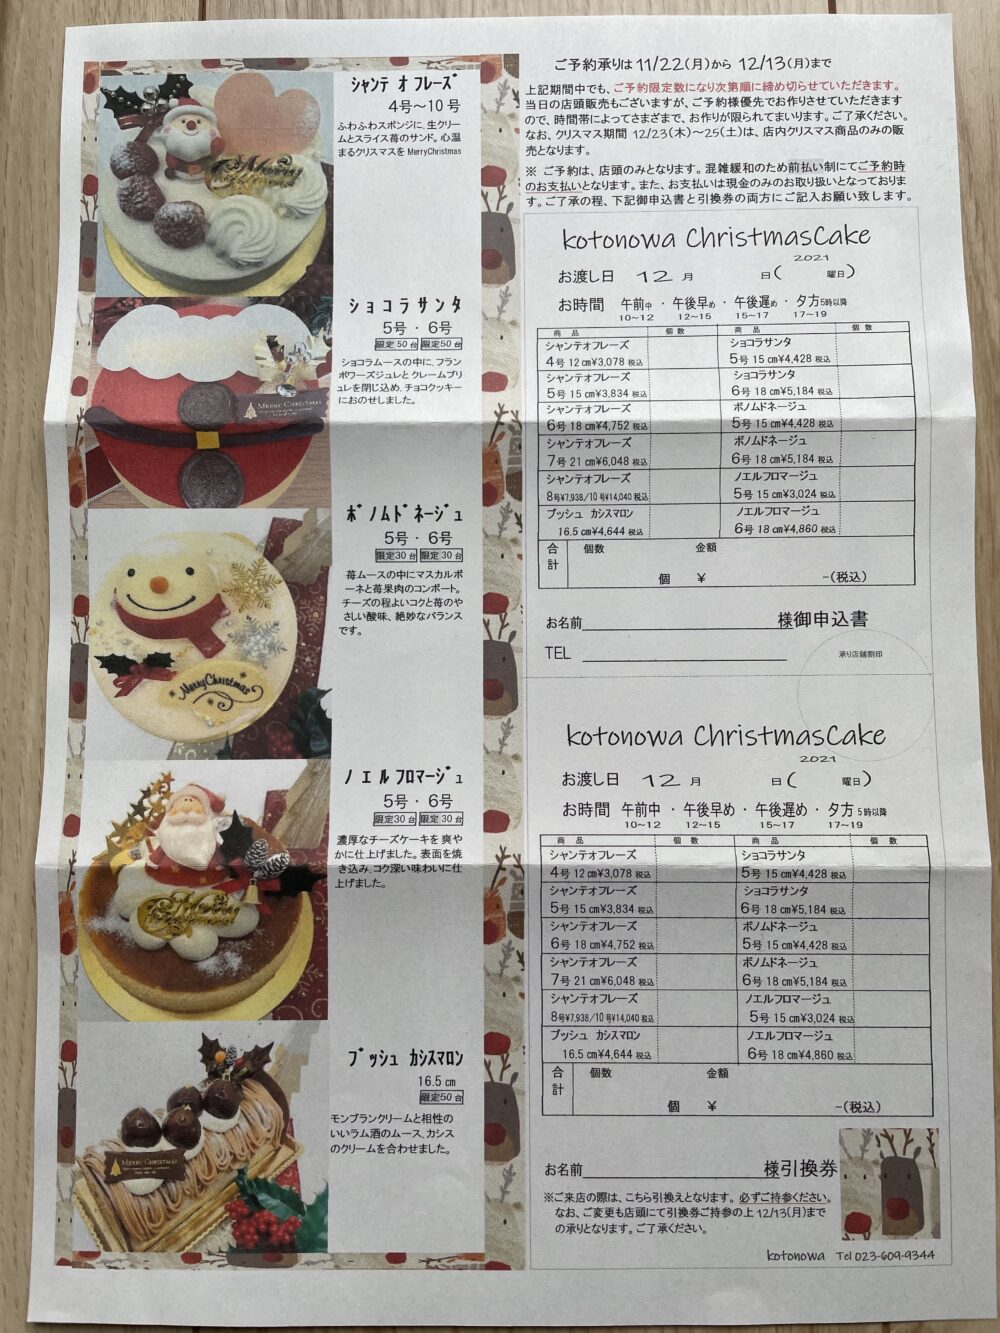 コトノワクリスマスケーキ予約カタログ